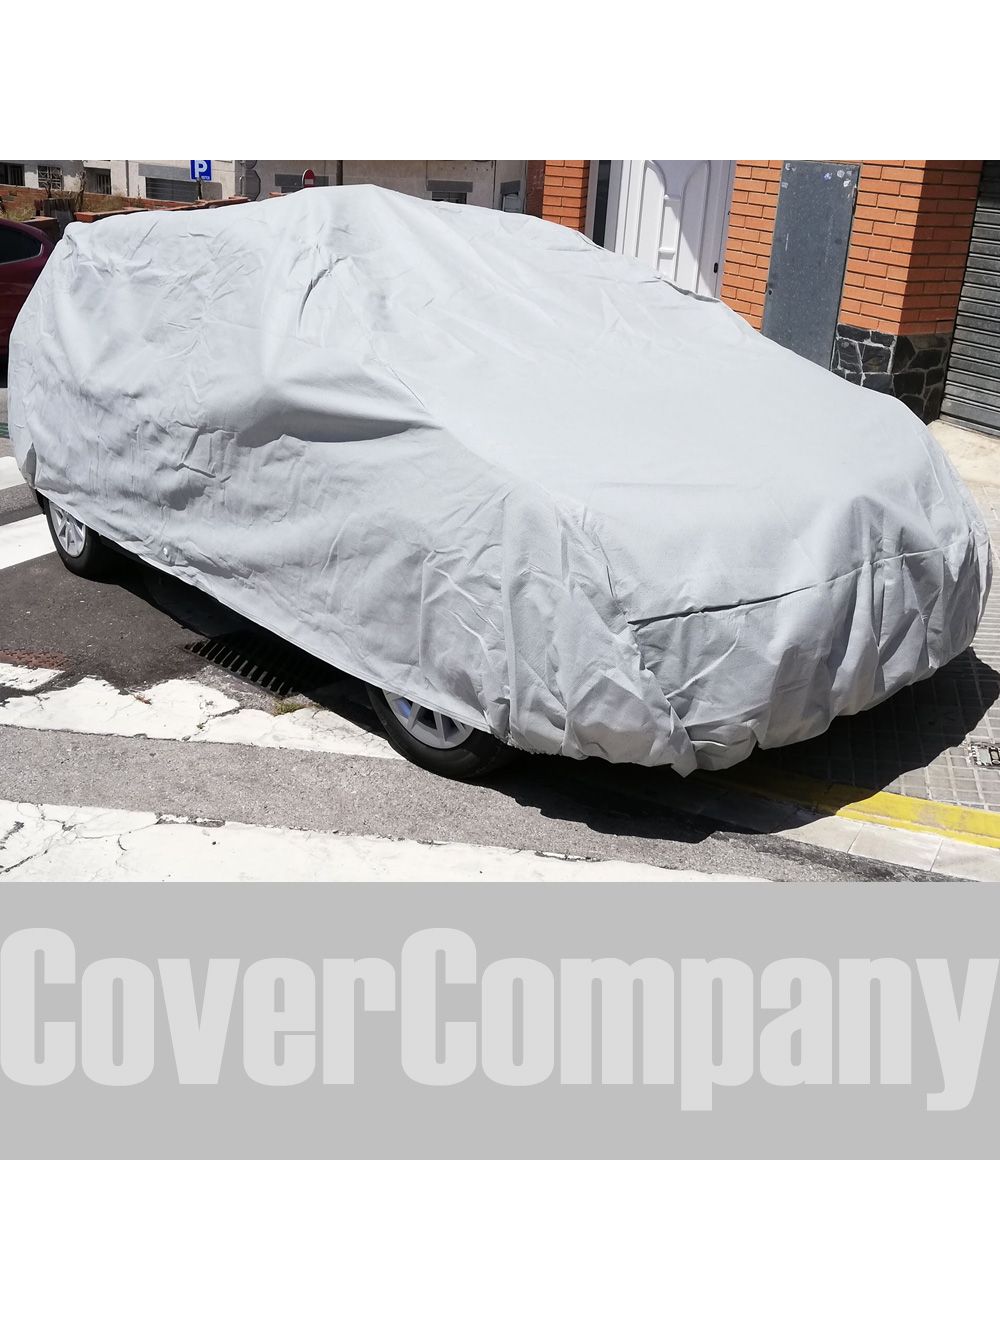 Standard Fit Toyota Rainproof Cover - Outdoor Bronze Range